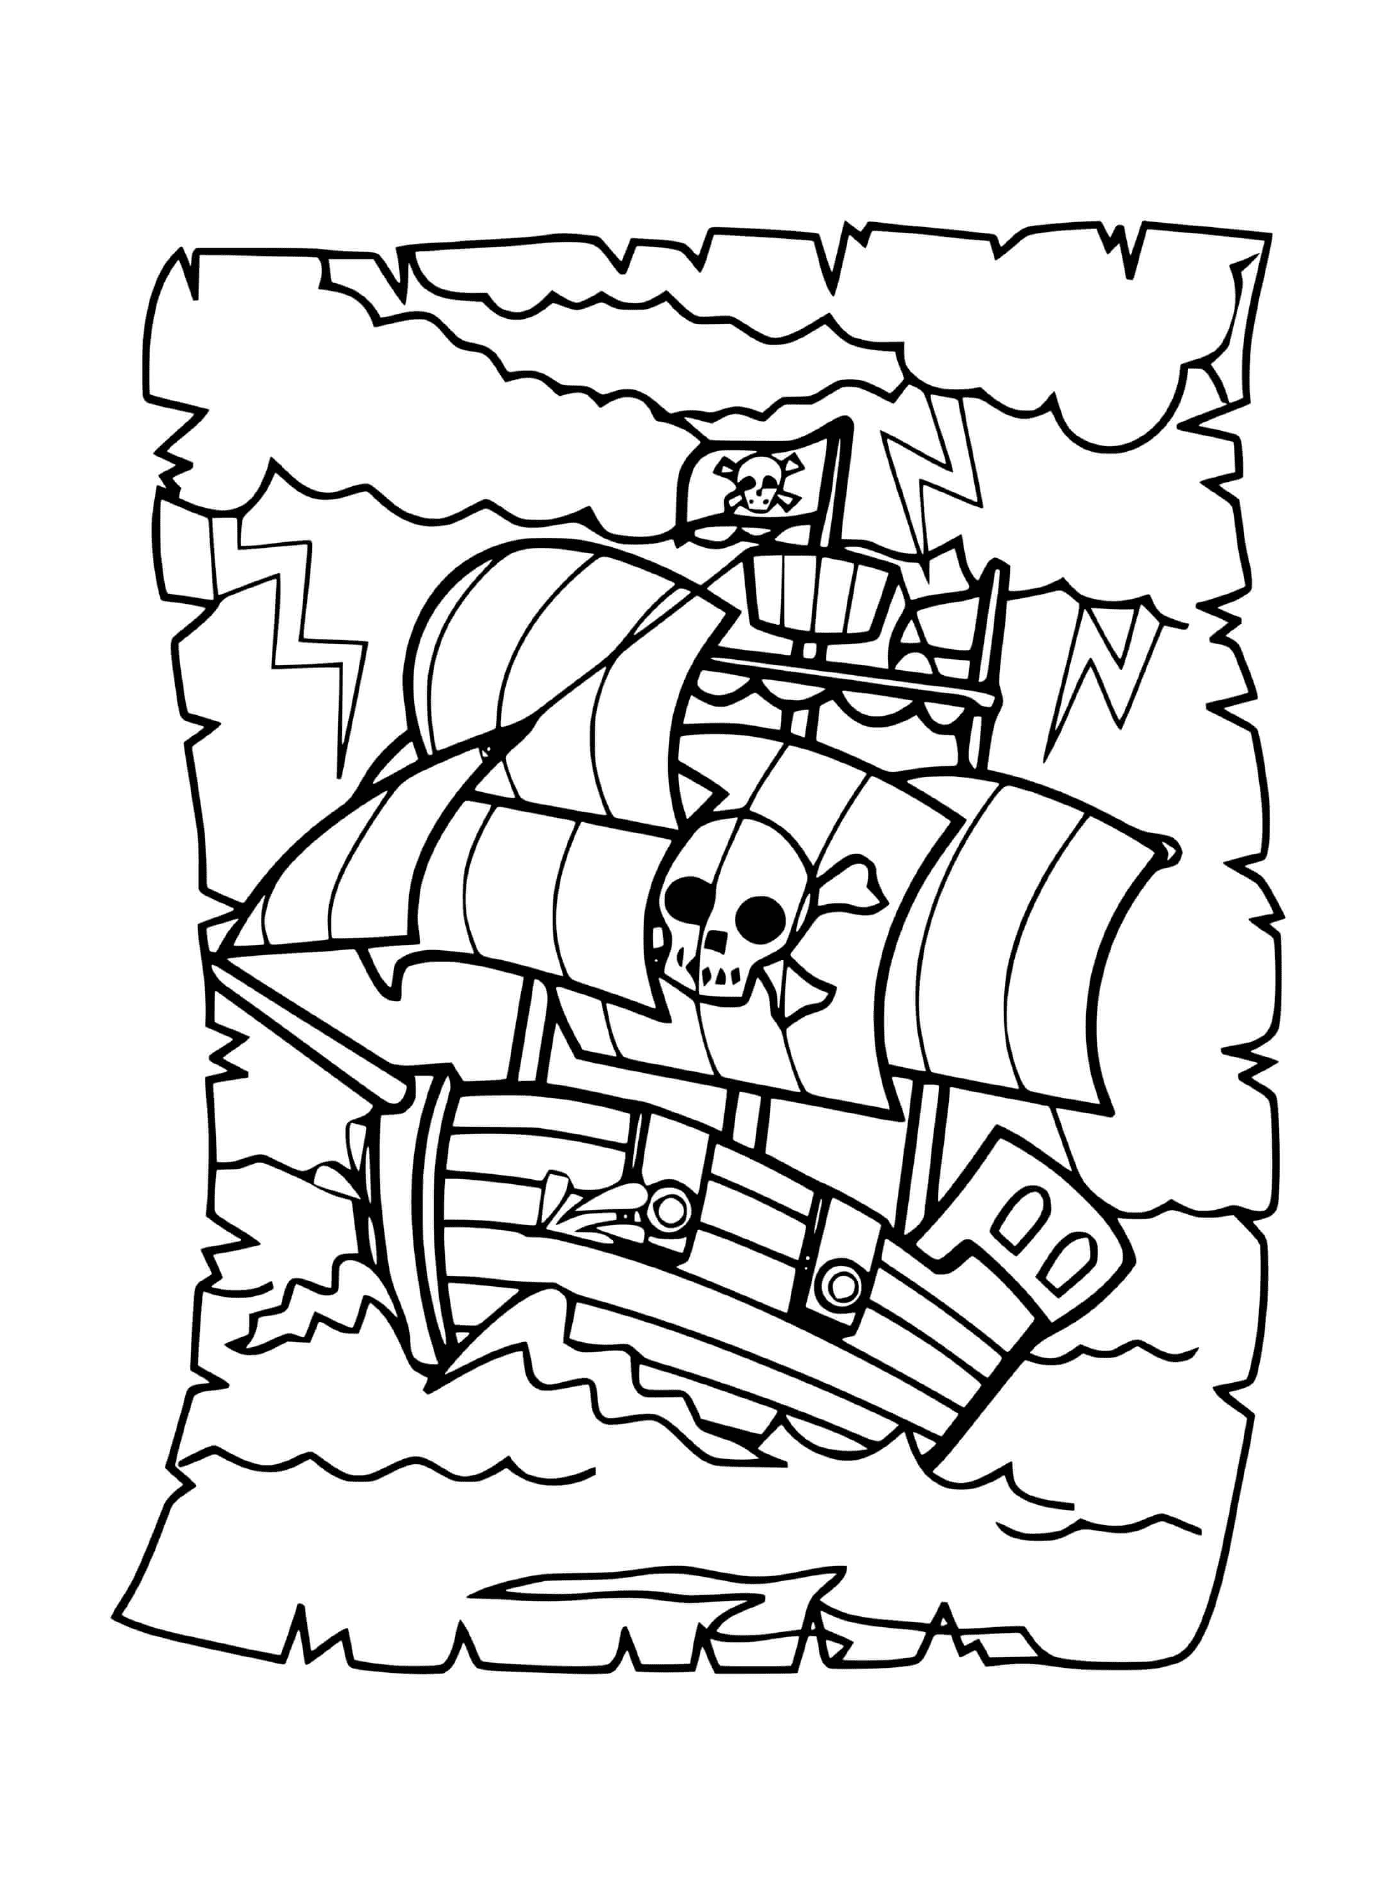  Pirata, barca che attraversa onde intense 